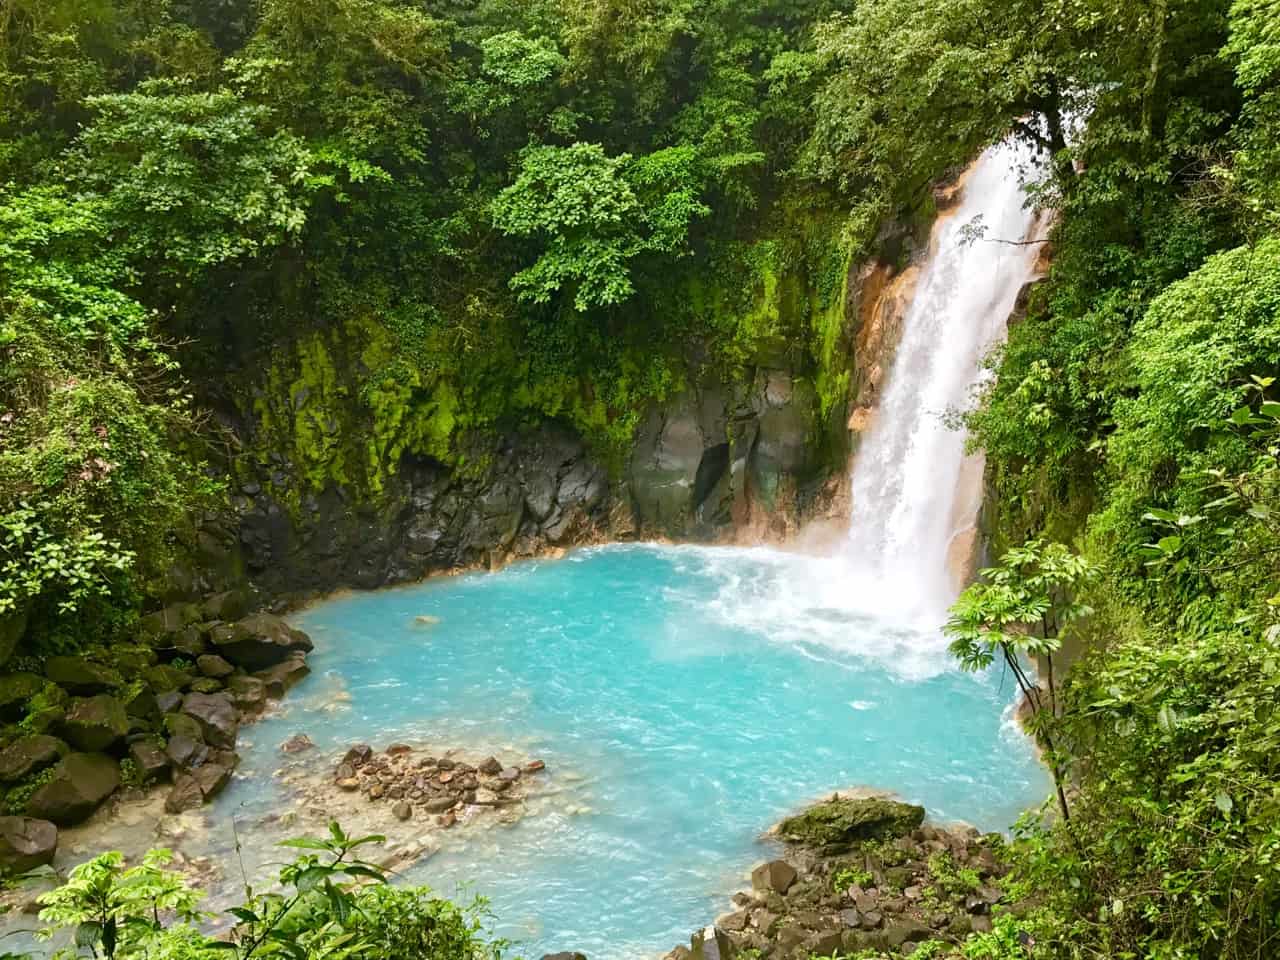 Der Wasserfall Rio Celeste stürzt in einen milchig-blauen Pool im Tenorio Volcano National Park, einem der weniger besuchten Parks in Costa Rica.